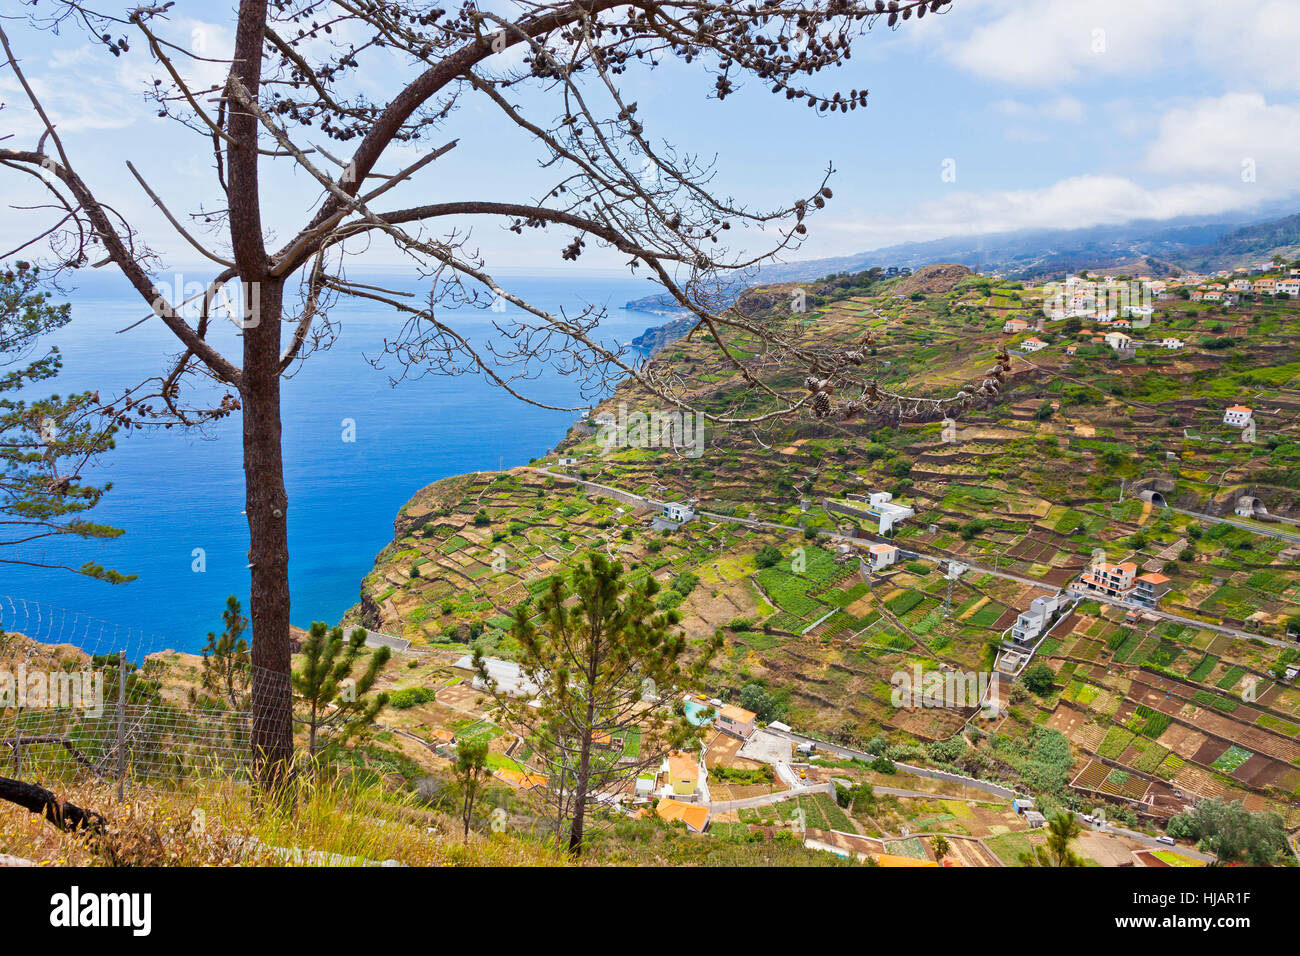 Picturesque view on Atlantic Ocean coast near Mirador de Cabo Girao on Madeira island, Portugal Stock Photo